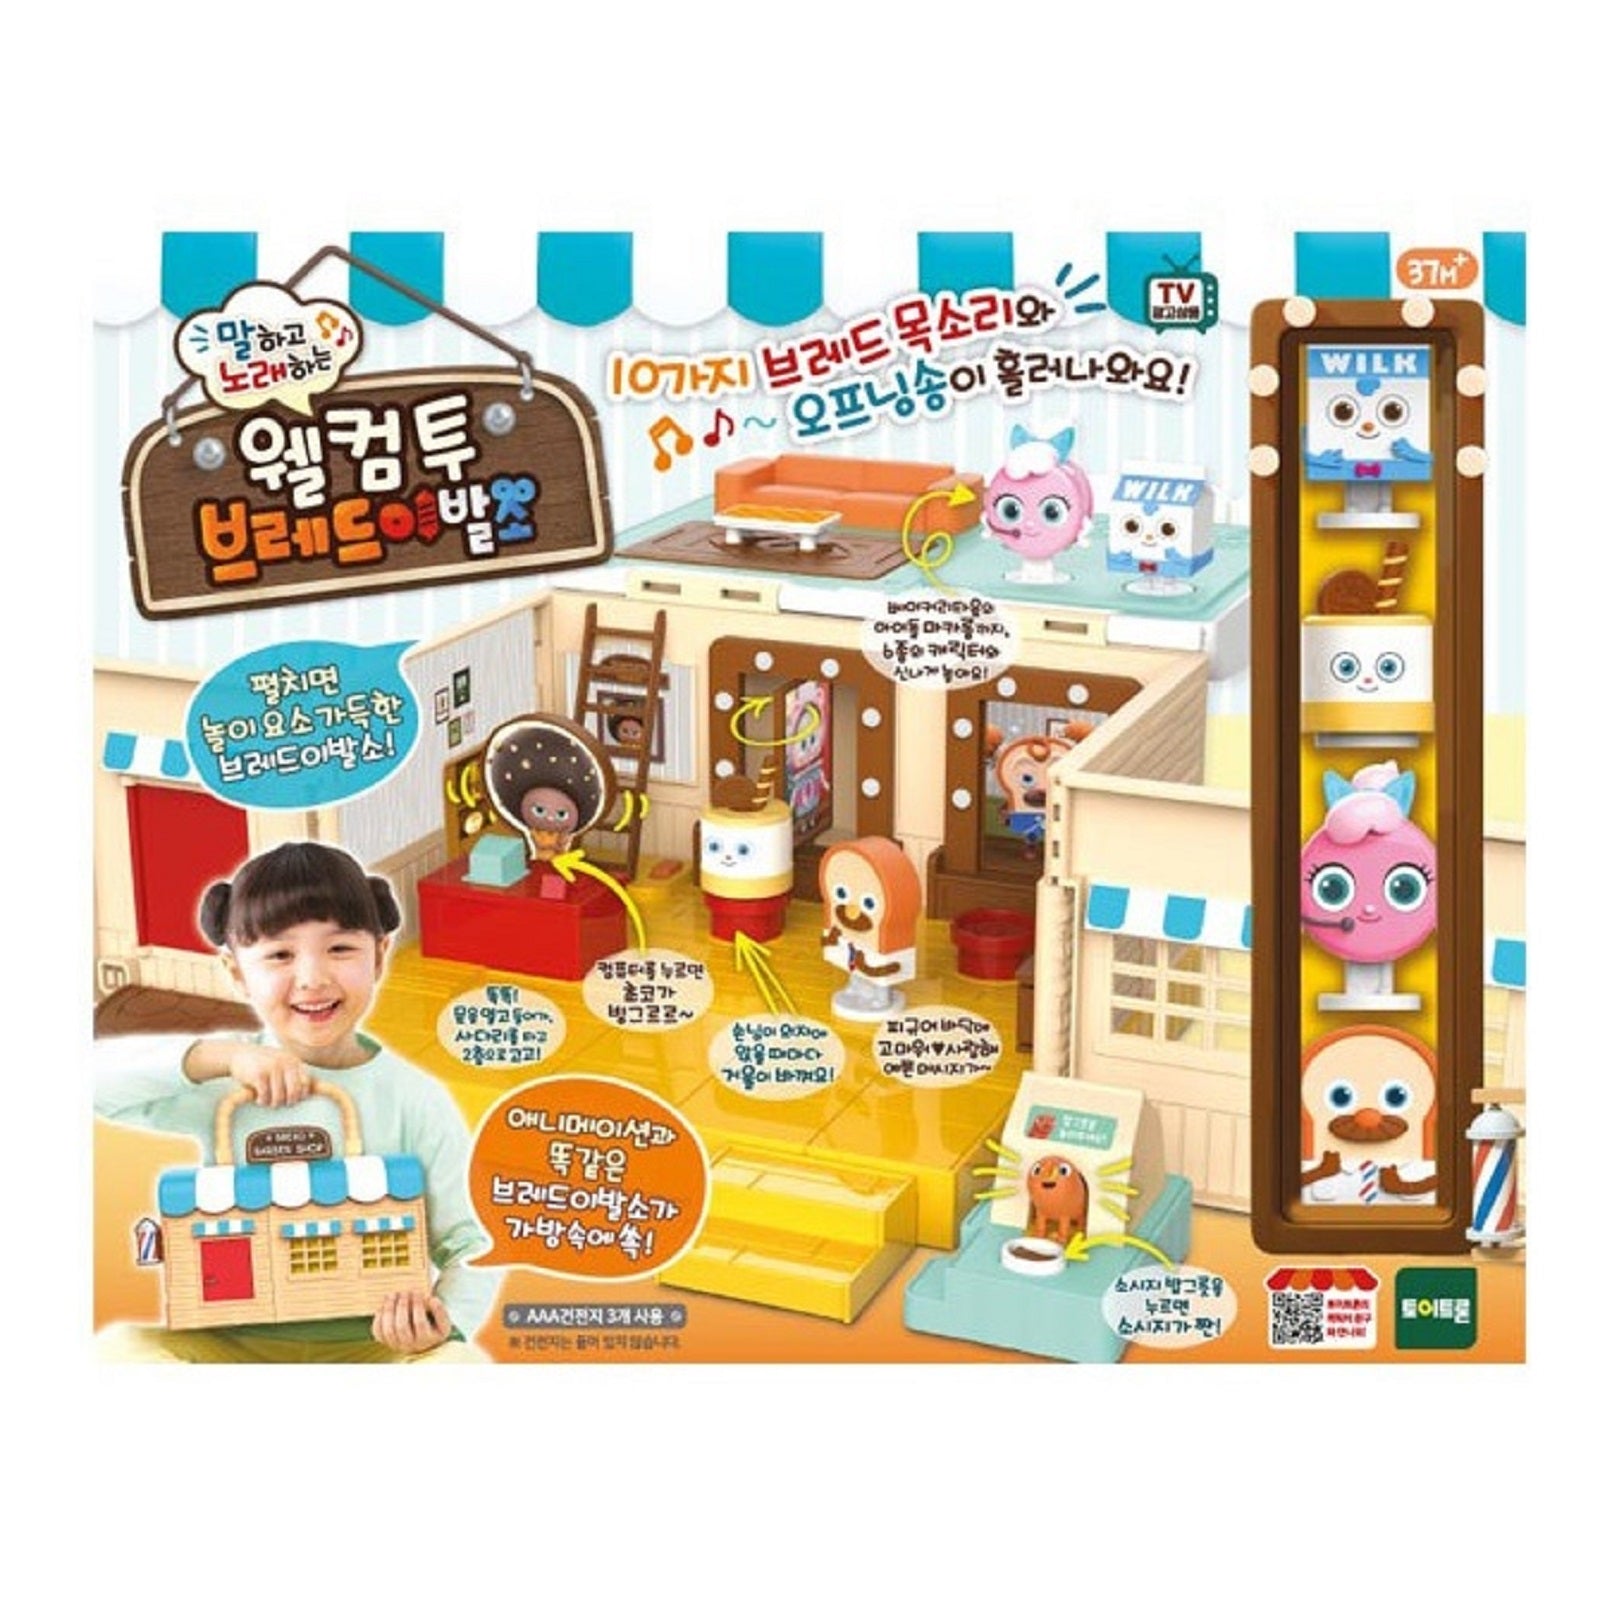 ウェルカムトゥブレッドバーバーショップ話して歌う人形の家 韓国おもちゃミニフィギュア Bread Barber Shop – ライクキャンディショップ